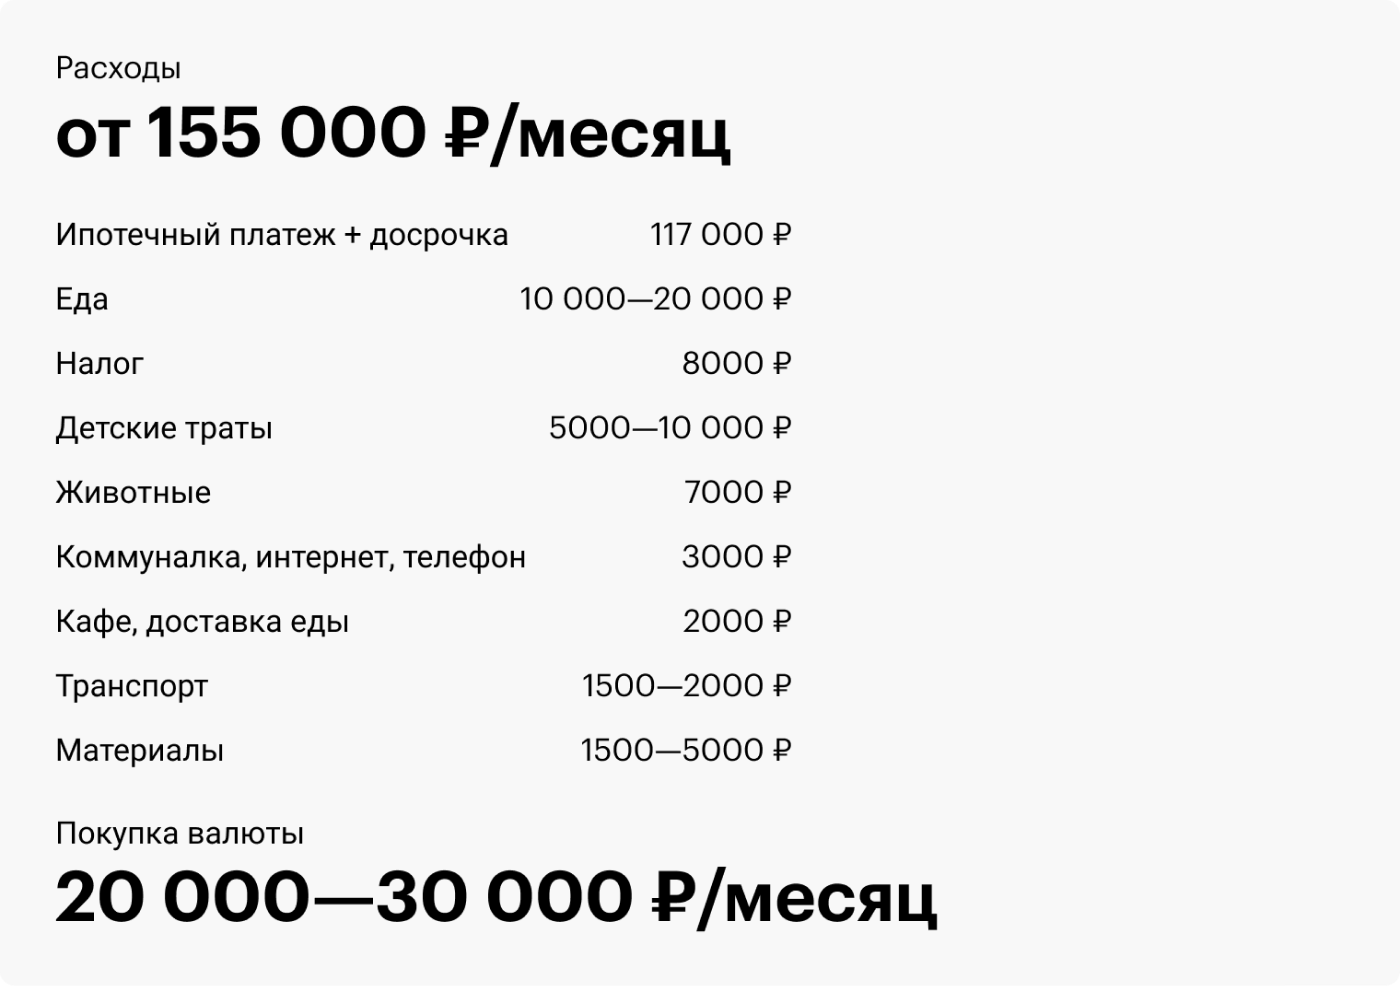 Сколько зарабатывают дизайнеры в месяц в москве. Сколько зарабатывает дизайнер. С̠к̠о̠л̠ь̠к̠о̠ з̠а̠р̠а̠б̠а̠т̠ы̠в̠а̠ю̠т̠ д̠и̠з̠а̠й̠н̠е̠р̠. Сколько зарабатывает дизайнер в месяц. Сколько зарабатывает модельер.